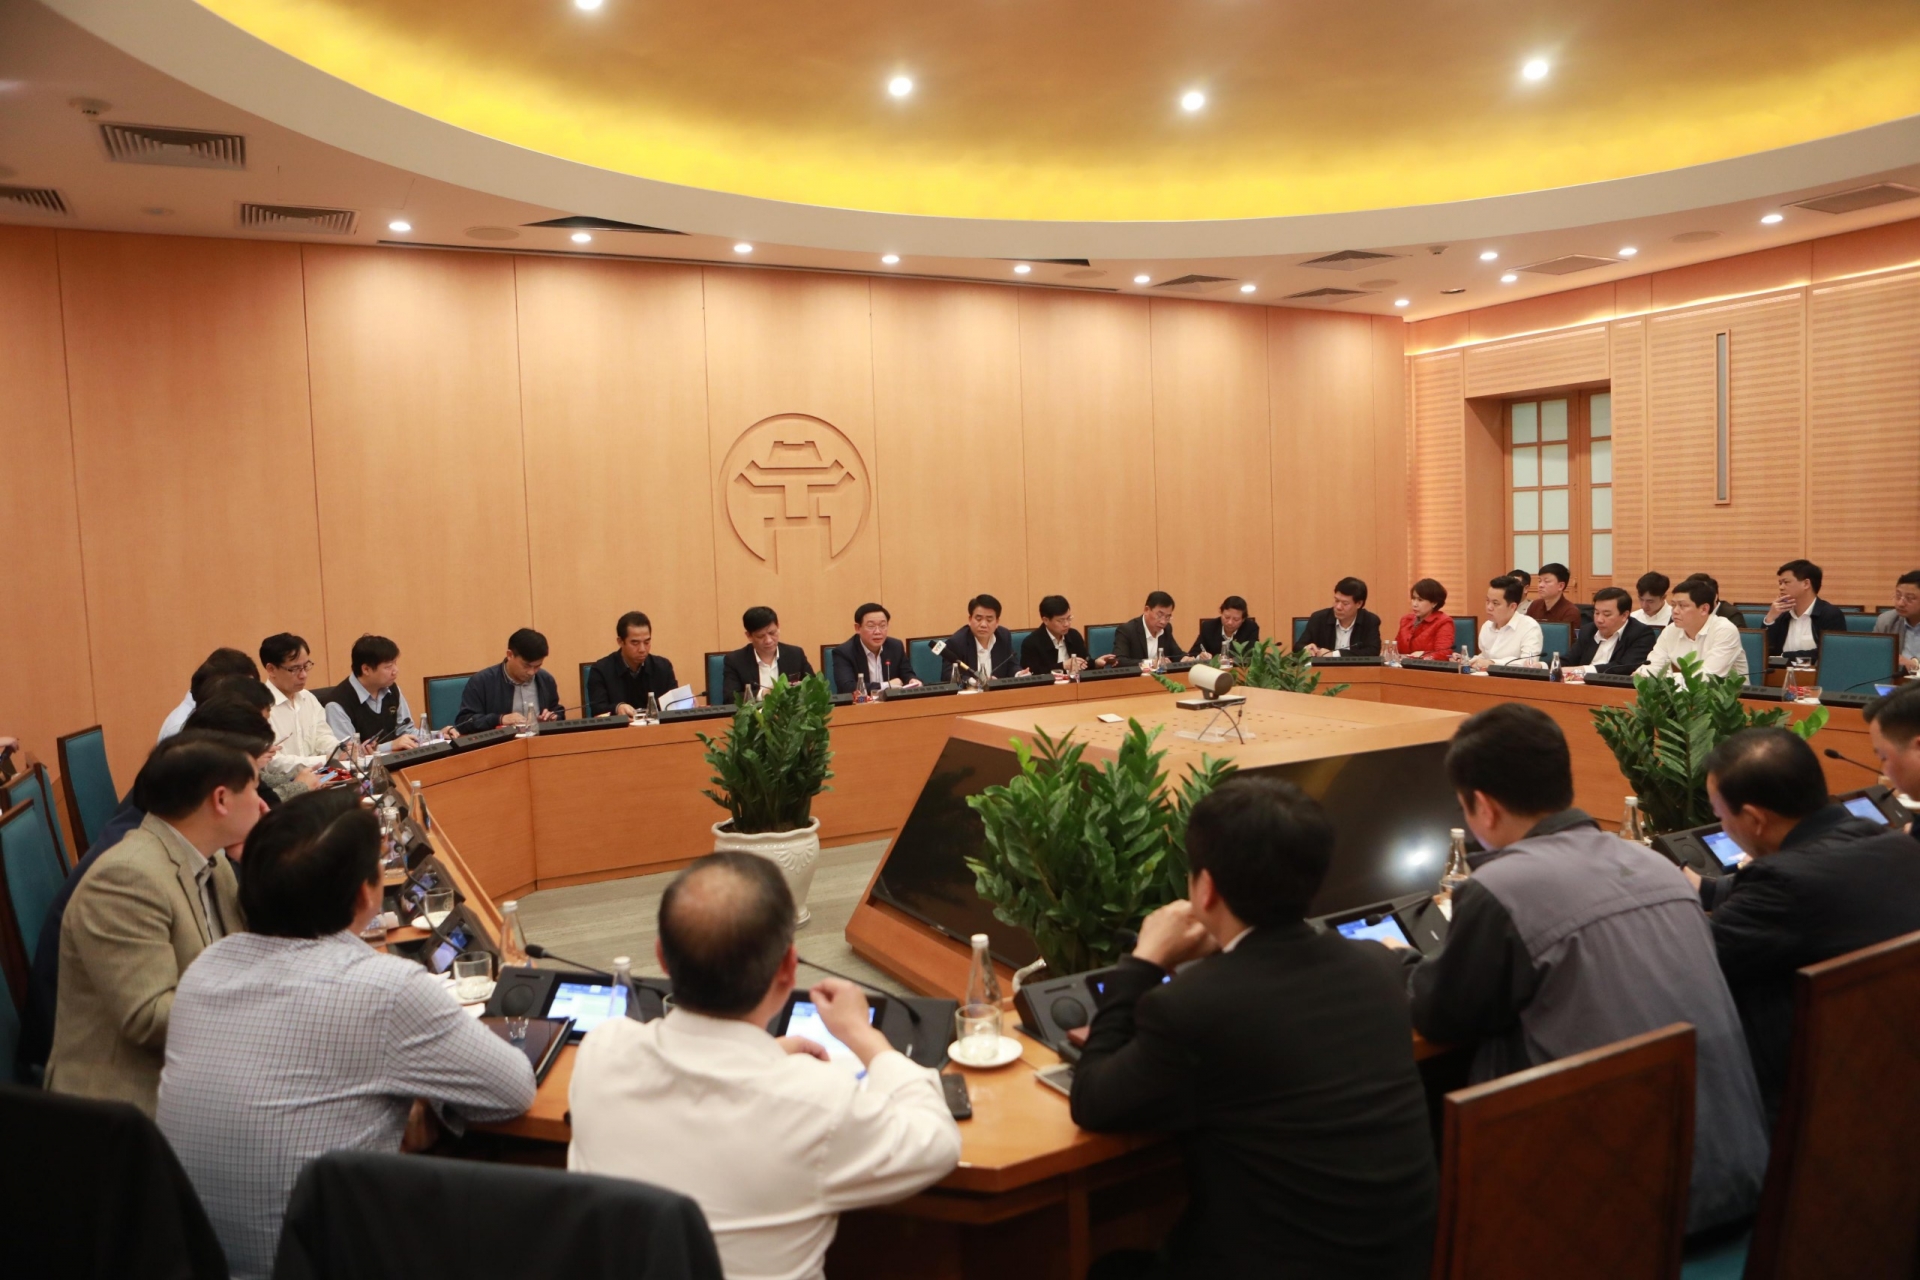 Toàn cảnh cuộc họp khẩn của lãnh đạo thành phố Hà Nội đêm ngày 6/3. Ảnh: VGP/Thiện Tâm